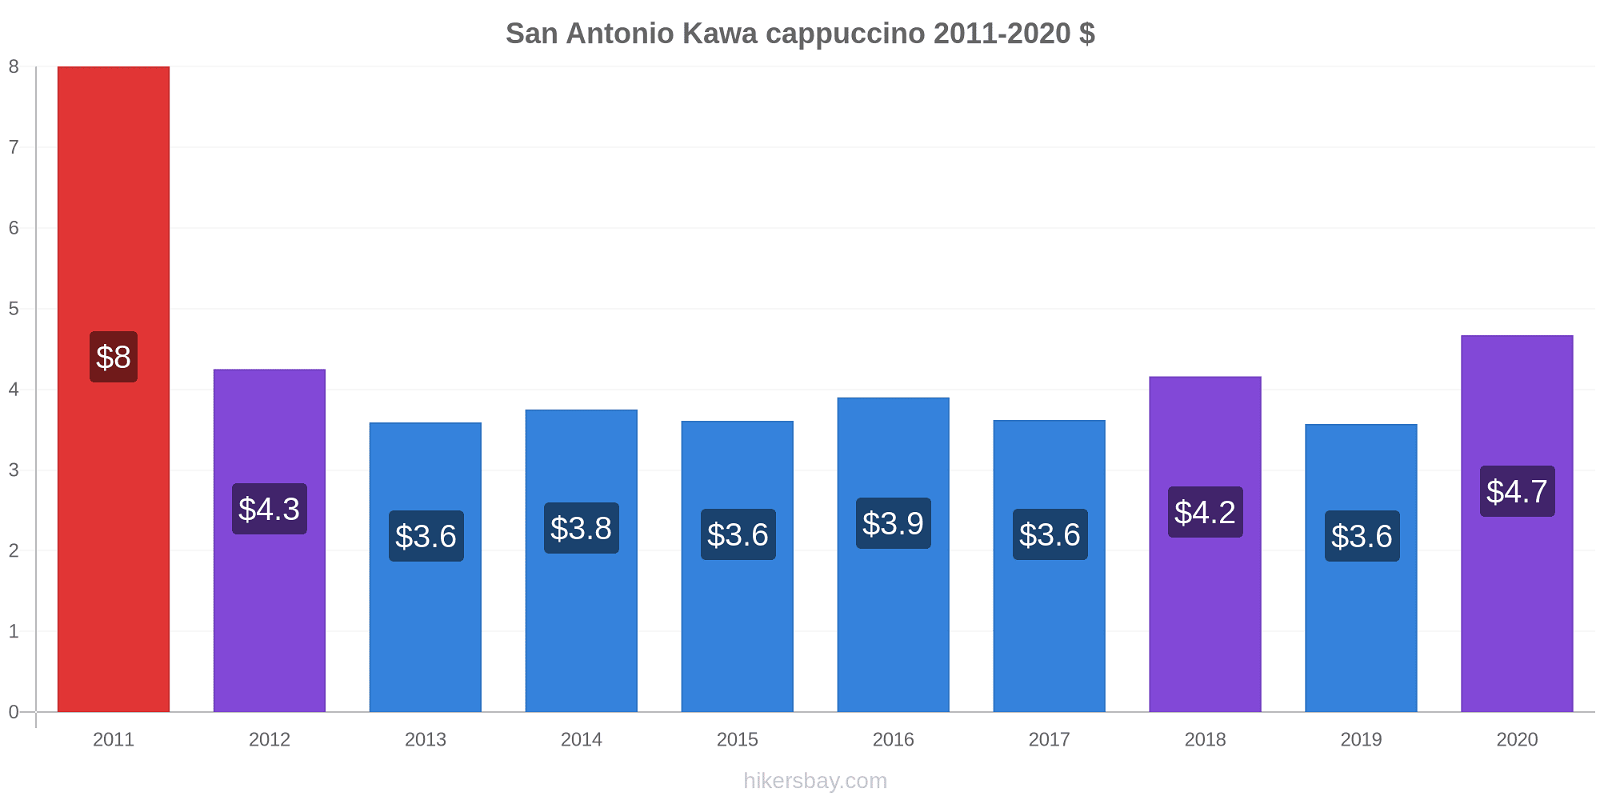 San Antonio zmiany cen Kawa cappuccino hikersbay.com